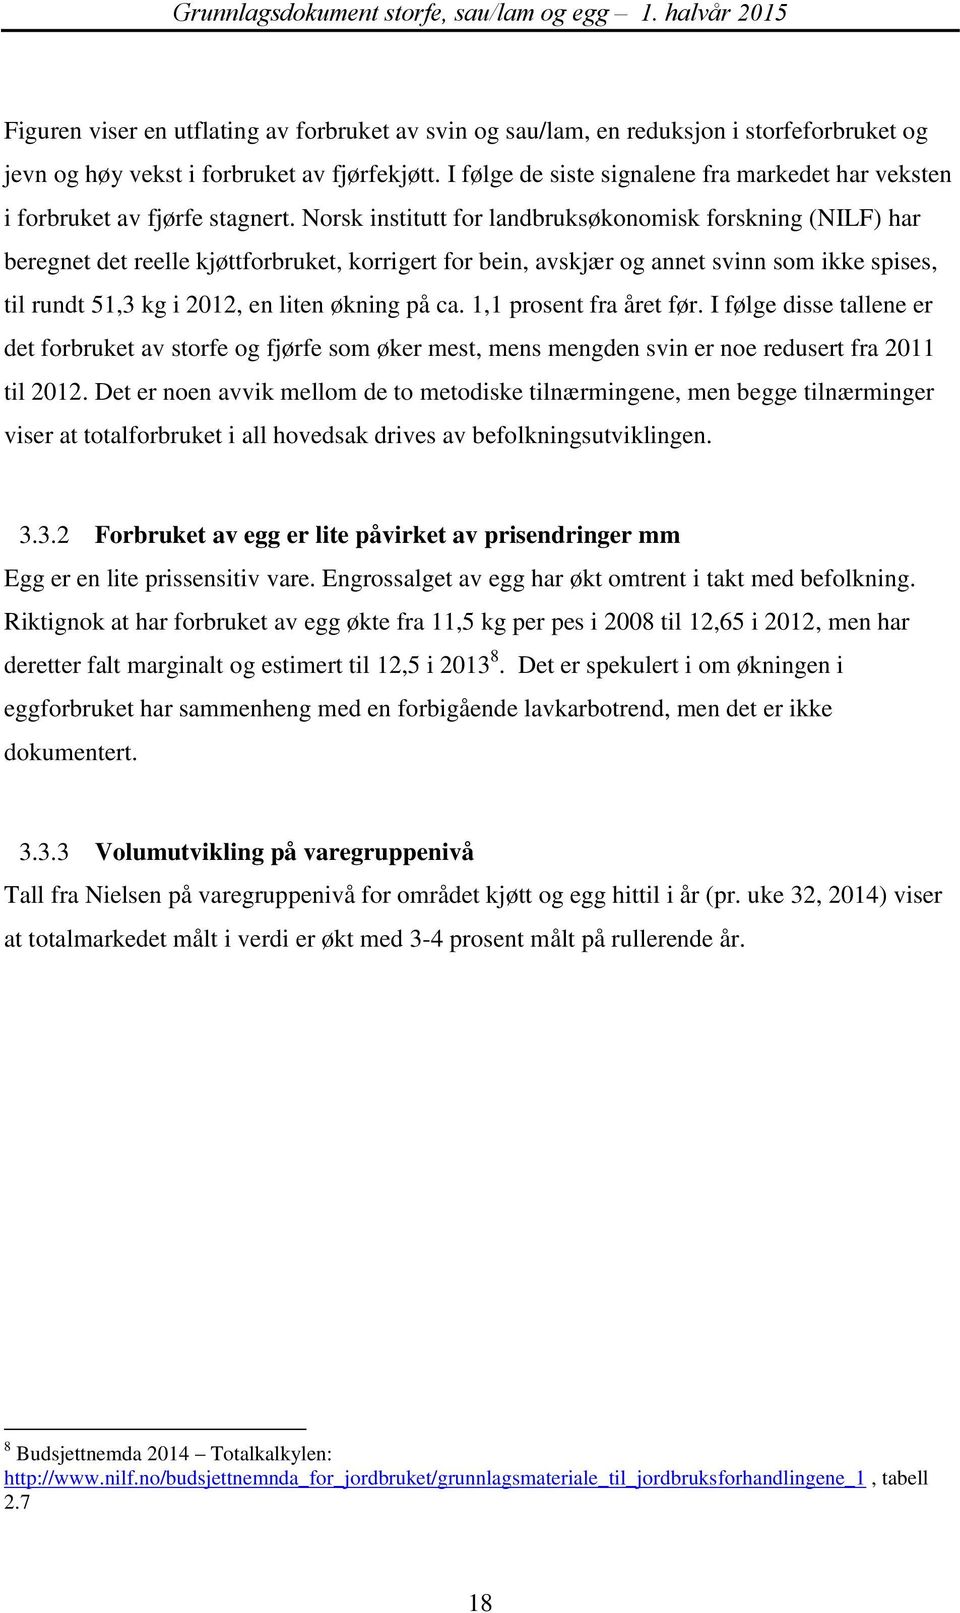 Norsk institutt for landbruksøkonomisk forskning (NILF) har beregnet det reelle kjøttforbruket, korrigert for bein, avskjær og annet svinn som ikke spises, til rundt 51,3 kg i 2012, en liten økning